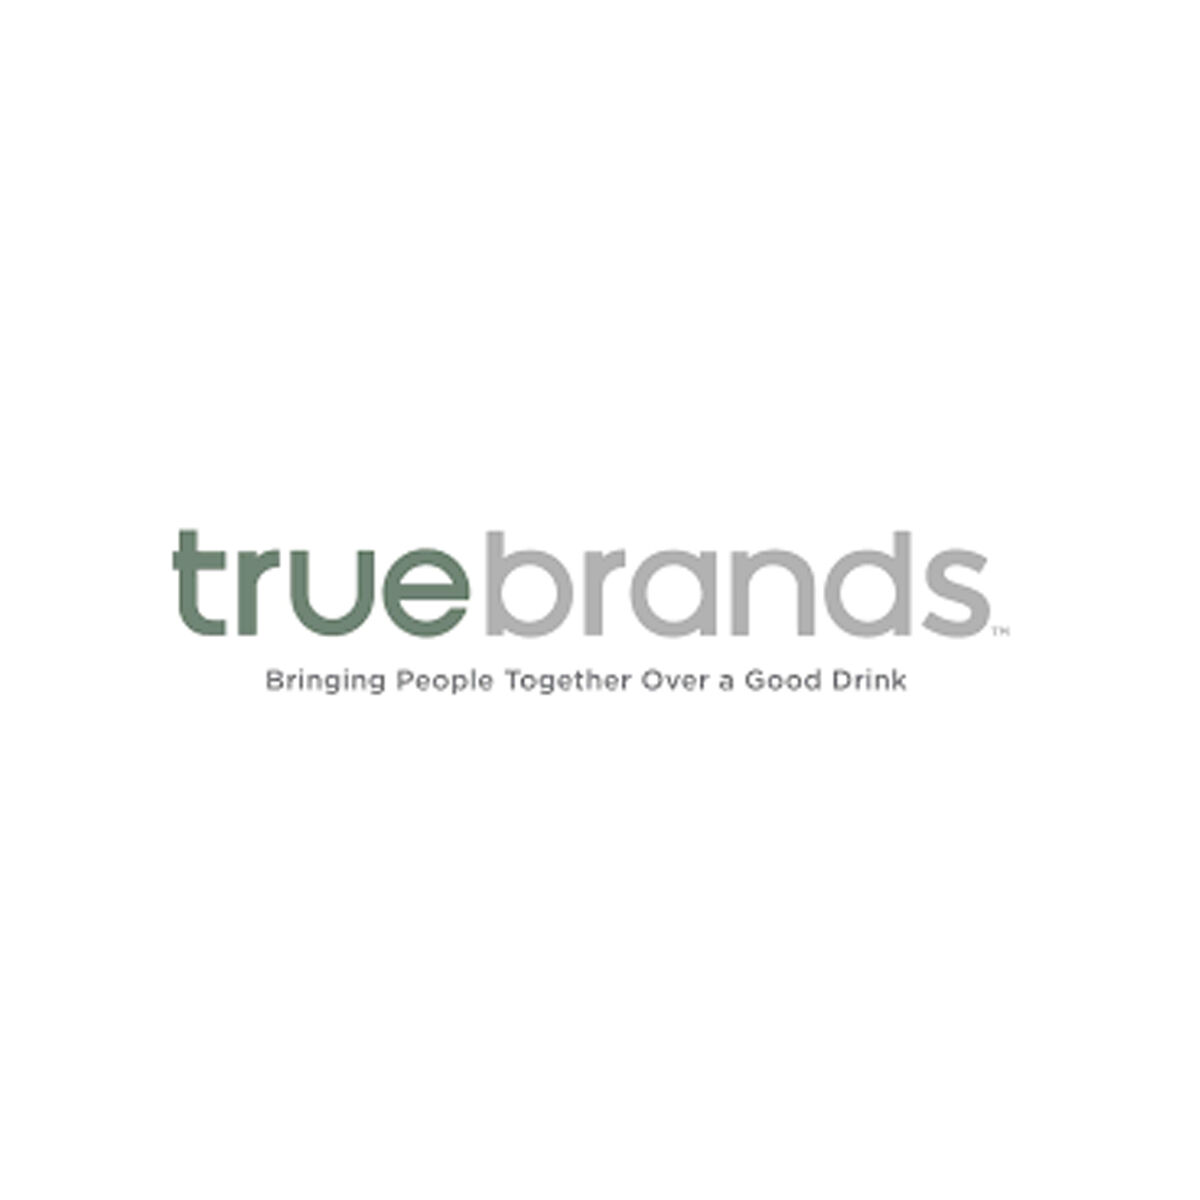 True Brands | Bringing People Together Over A Good Drink